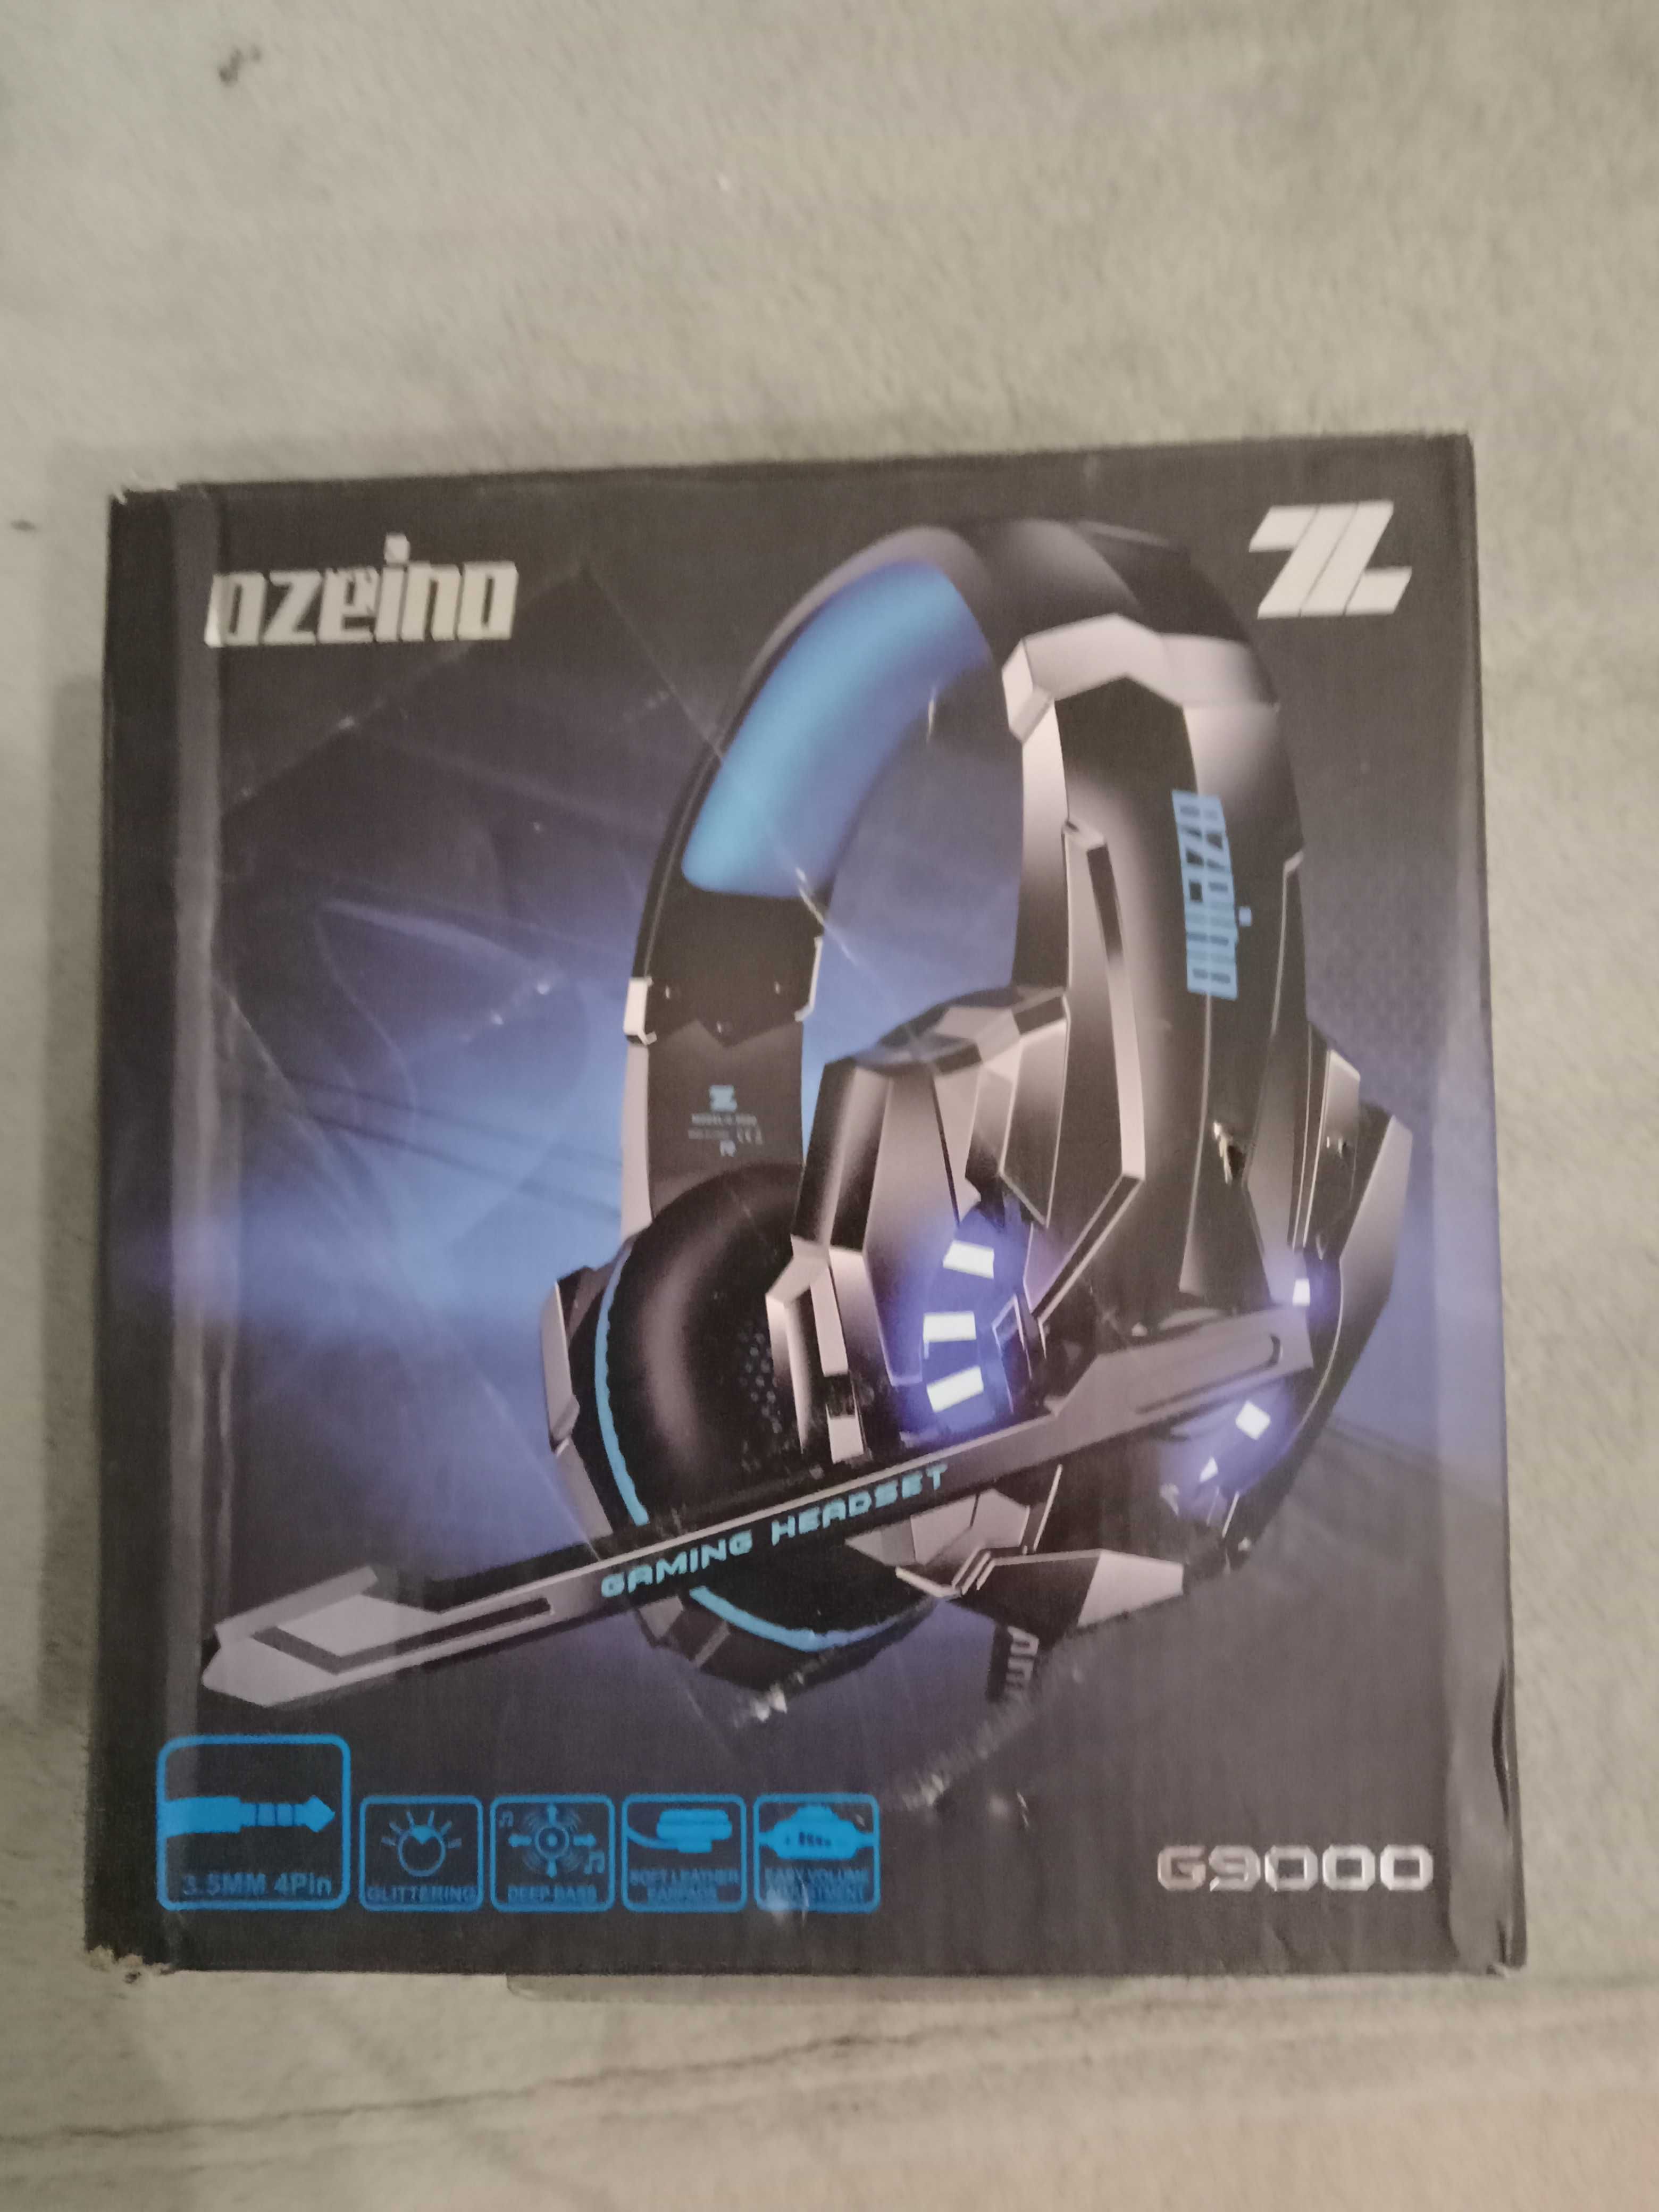 Słuchawki nauszne gamingowe Ozeino G9000